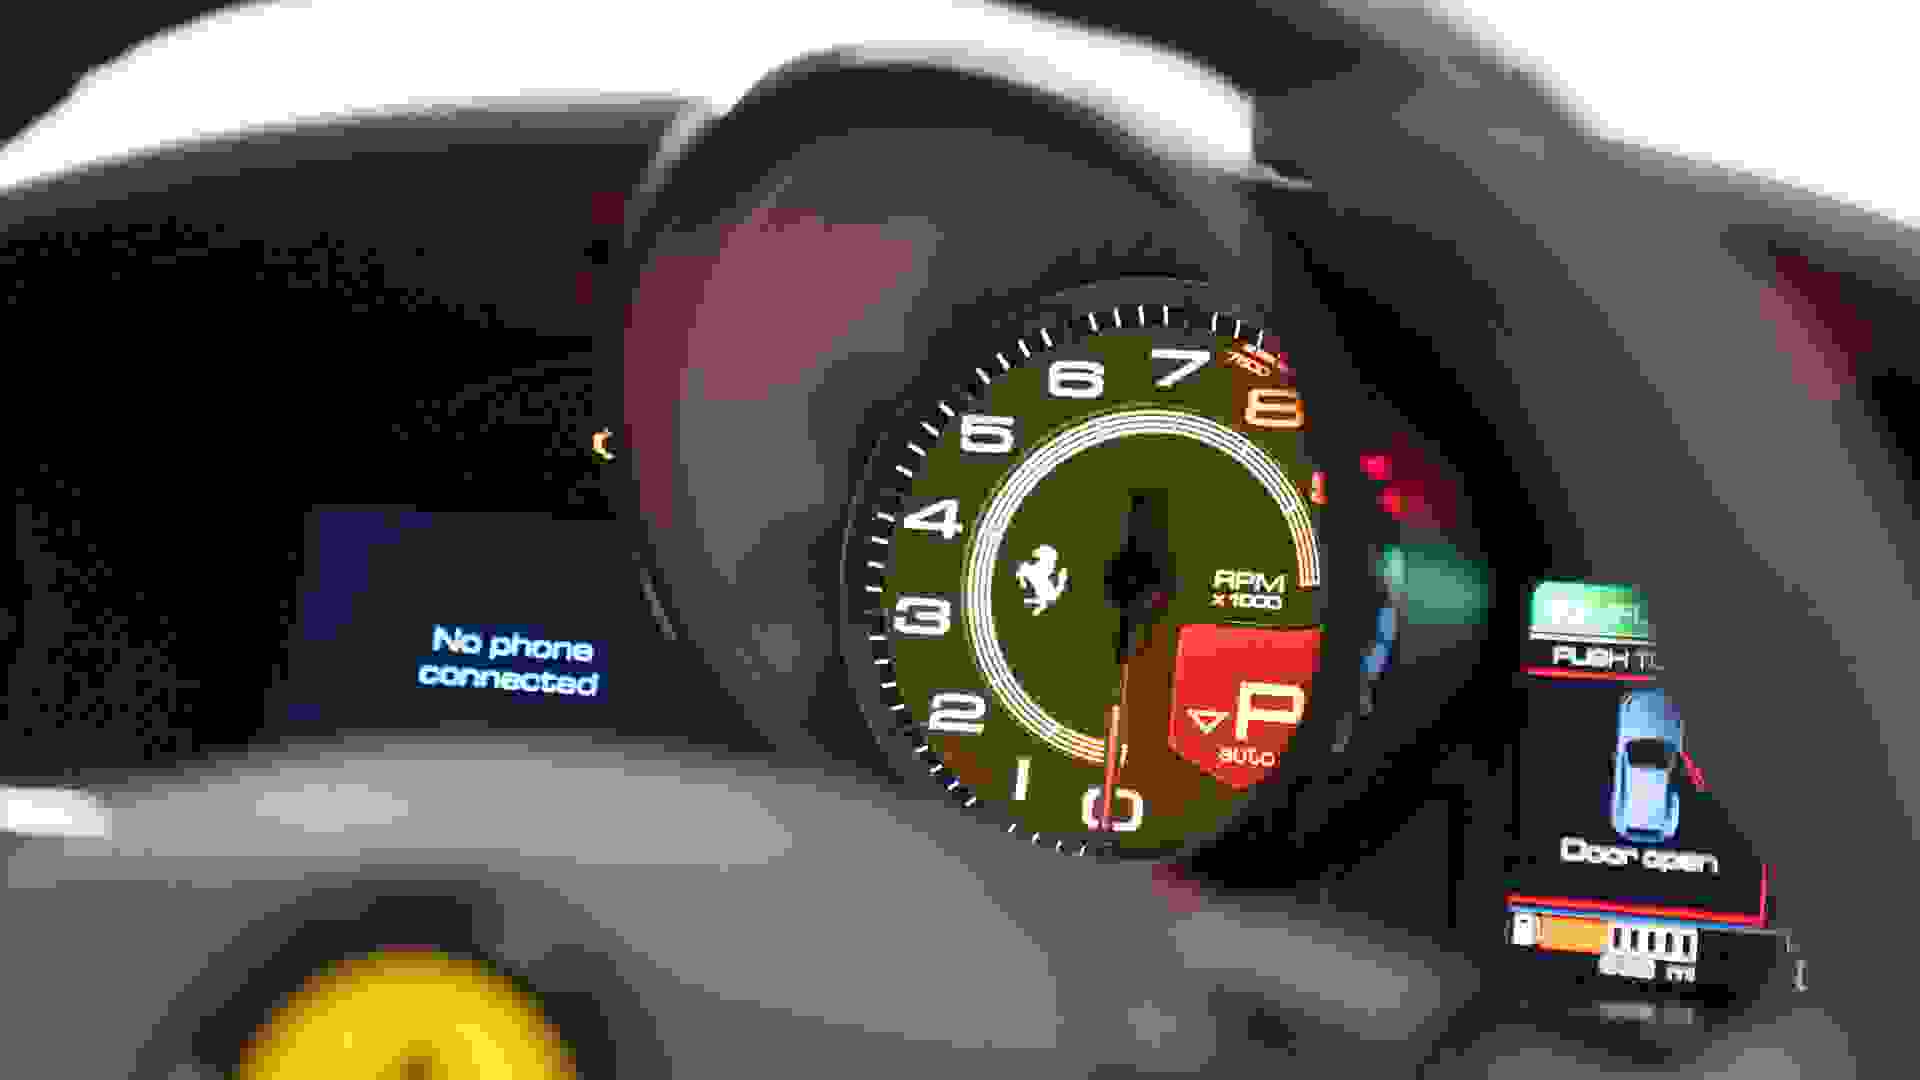 Ferrari GTC4 LUSSO T Photo e73a1b32-e356-4df1-a1f4-d0ea025aa2bf.jpg